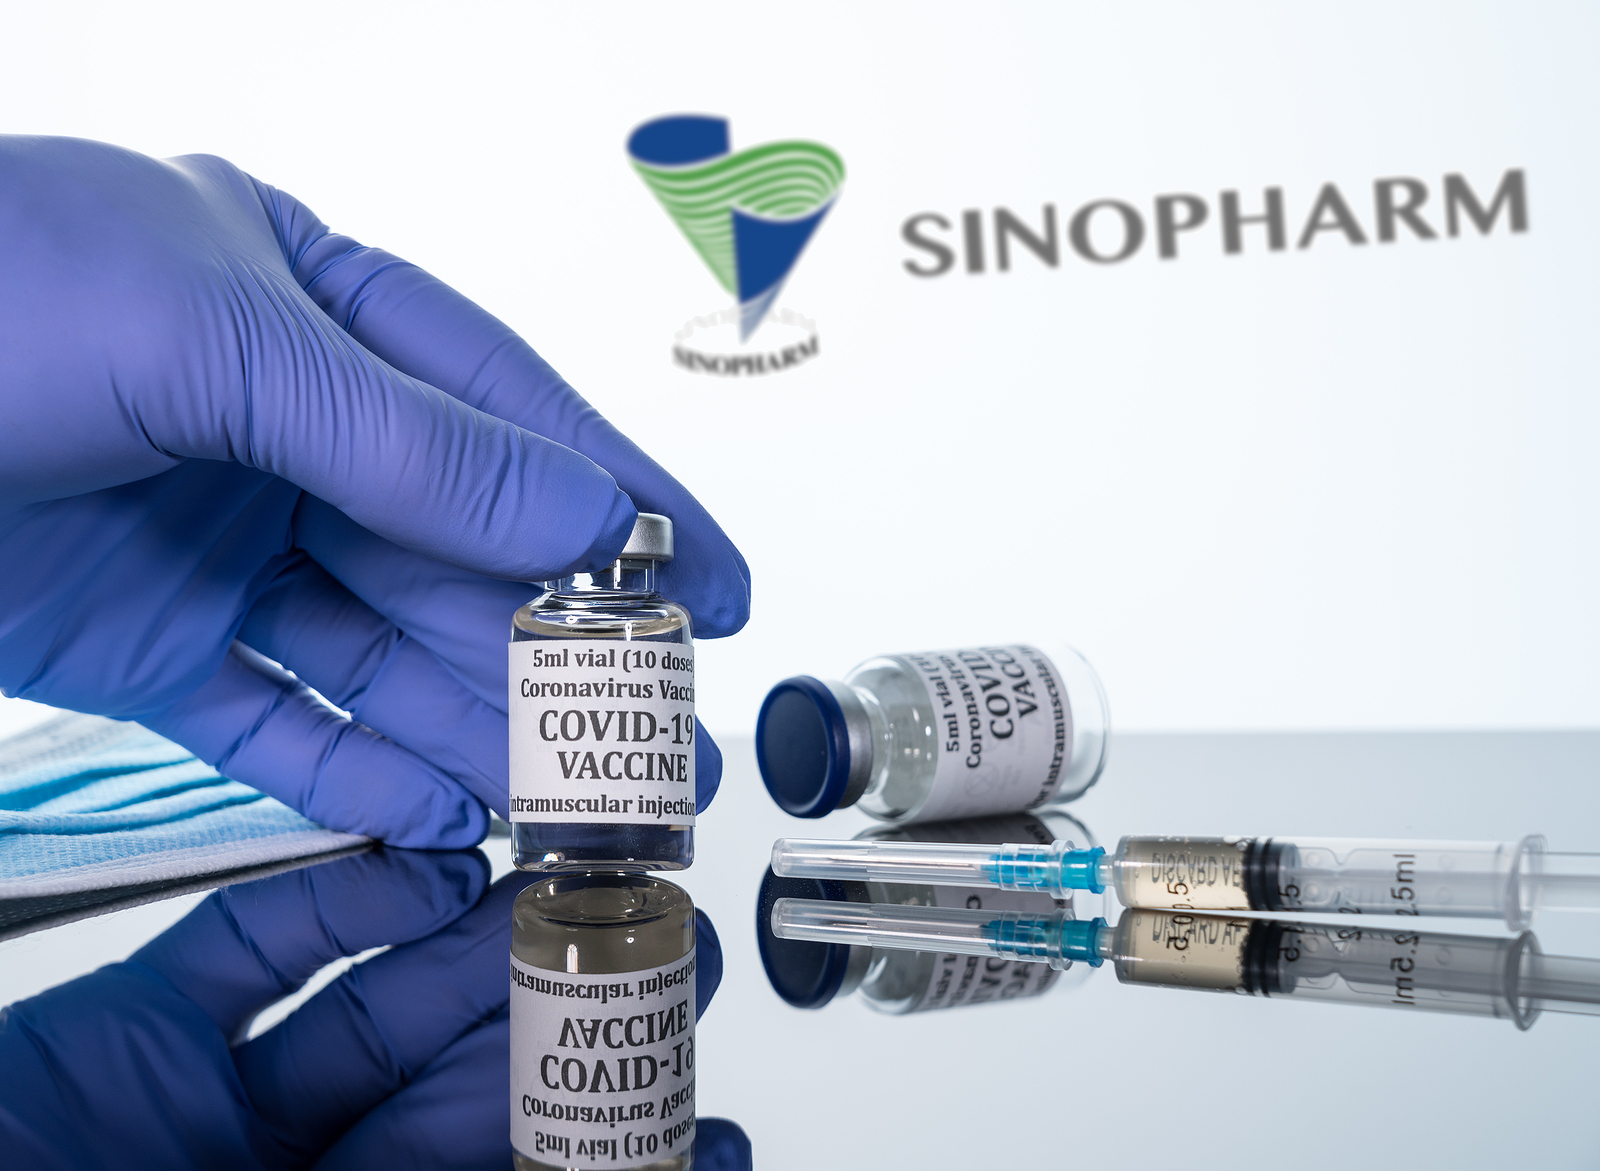 sinopharm vaccine china serbia